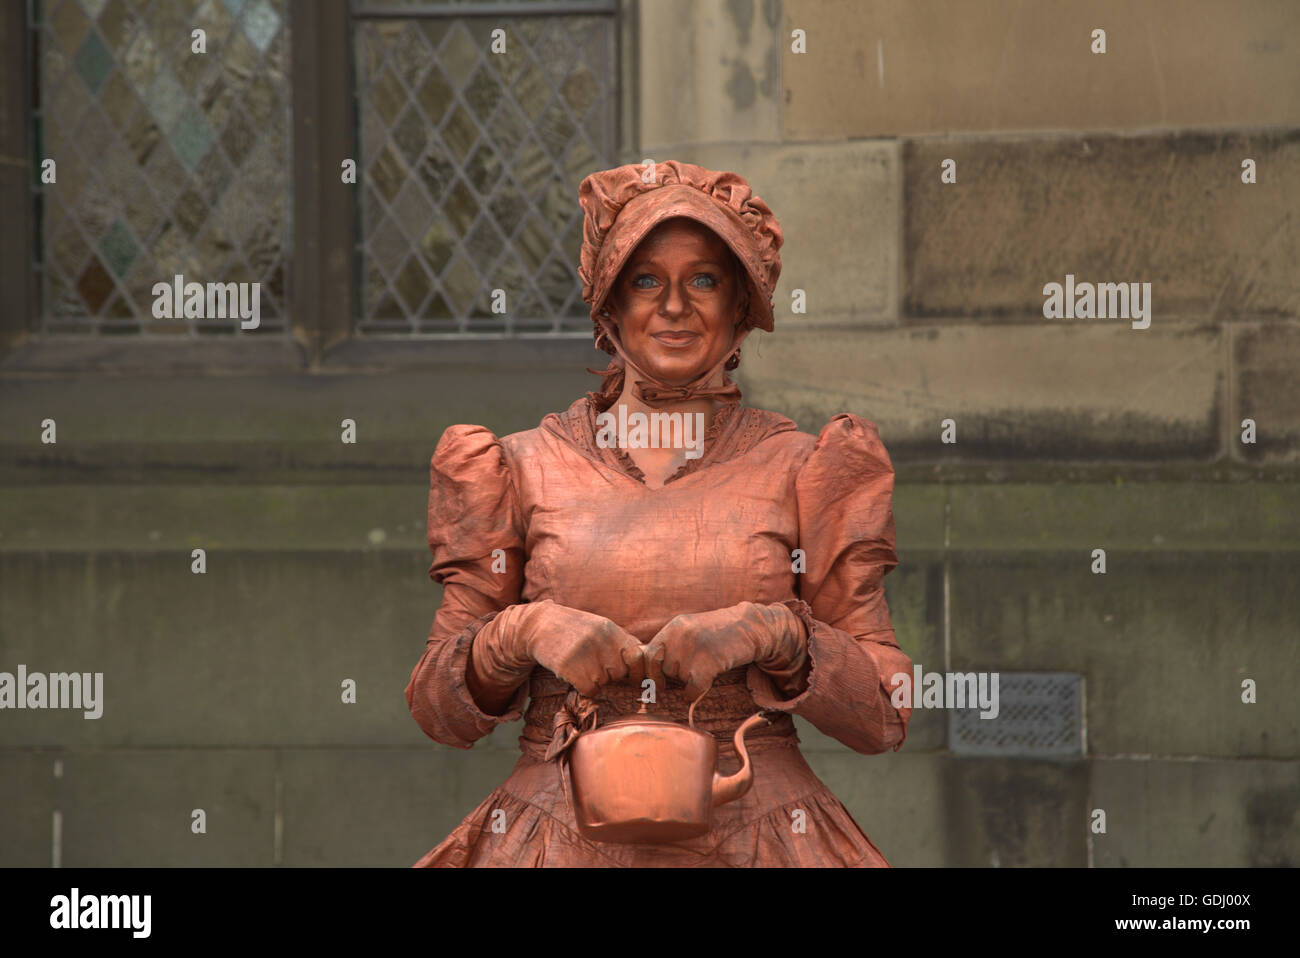 'Miss Copperpot statue vivante de l' Edinburgh Festival Fringe festival de rue 2015 parrainé vierge Edinburgh, Ecosse, Royaume-Uni Banque D'Images